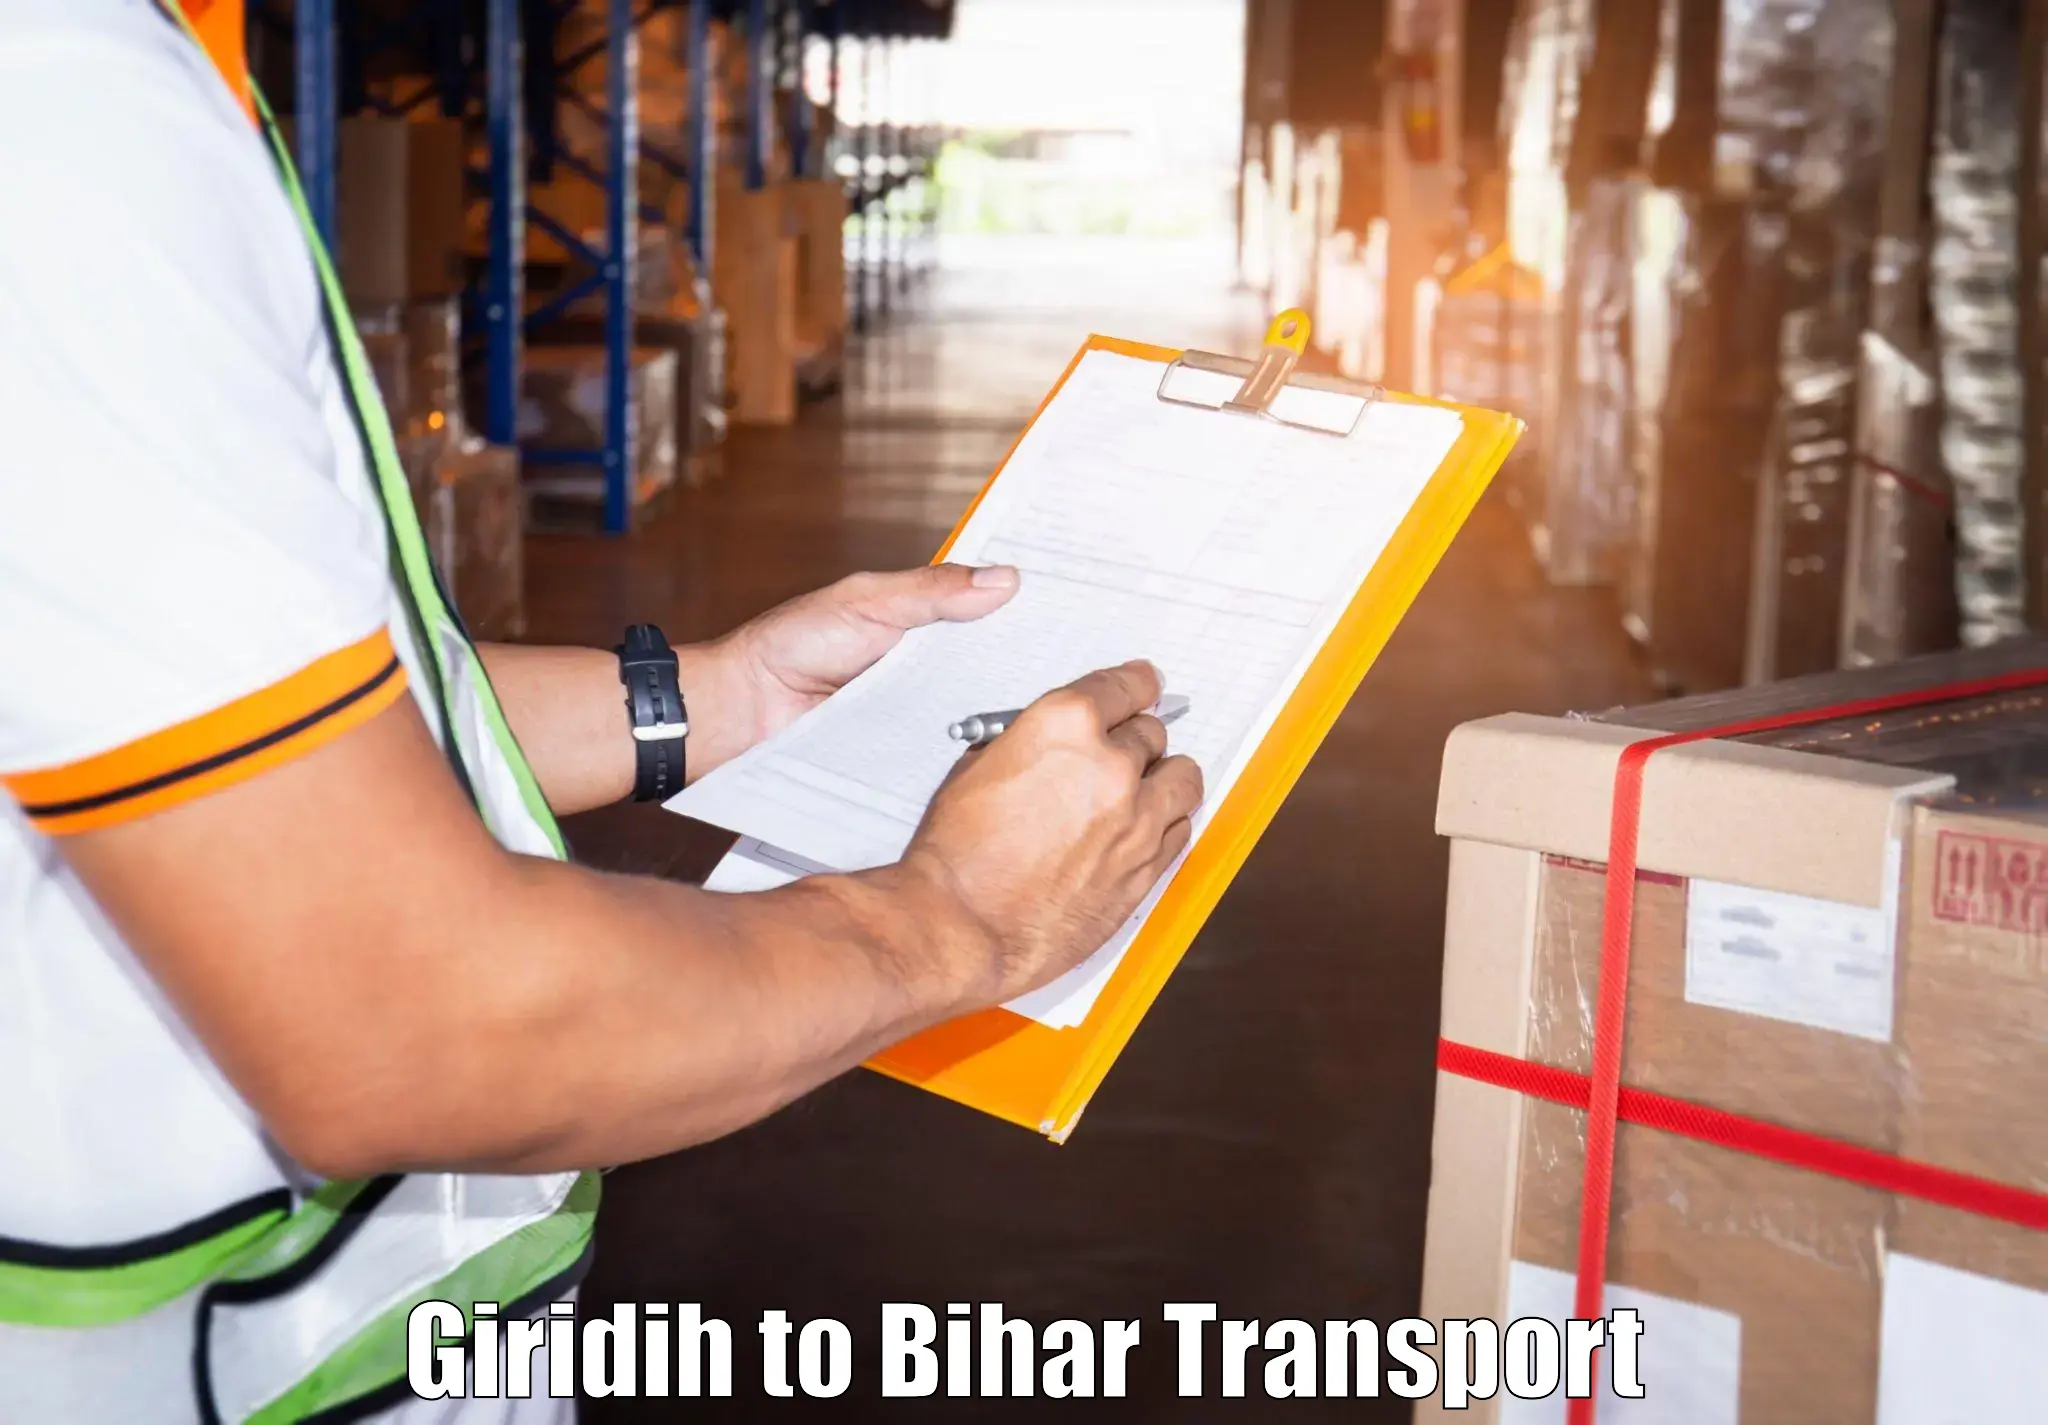 Daily transport service Giridih to Bihar